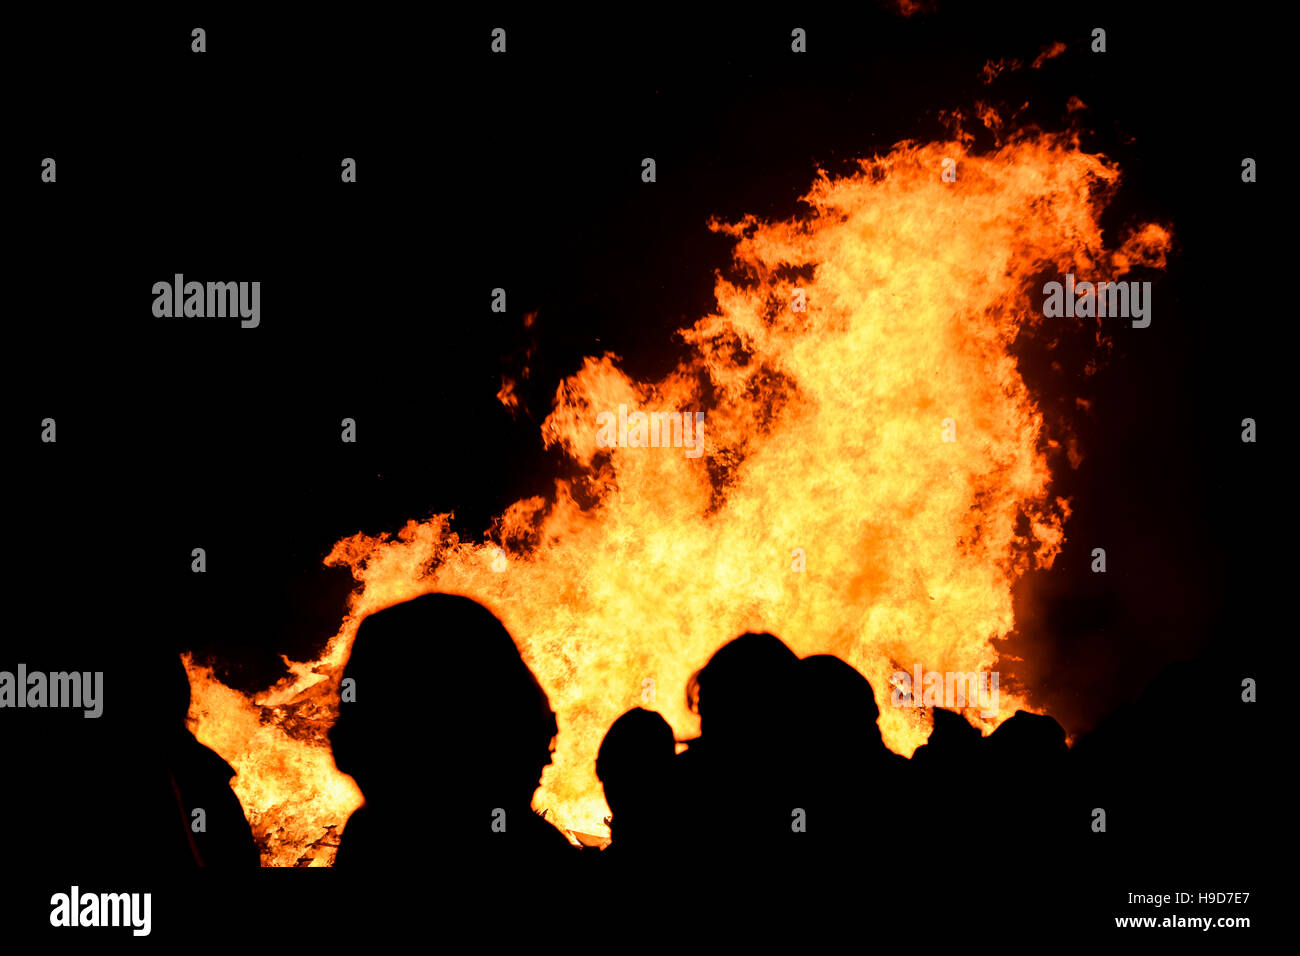 Allgemeine öffentliche Silhouette gegen den brennenden Lagerfeuer an Penkridge Scouts Lagerfeuer, Staffordshire, England, Vereinigtes Königreich, 2016. Stockfoto